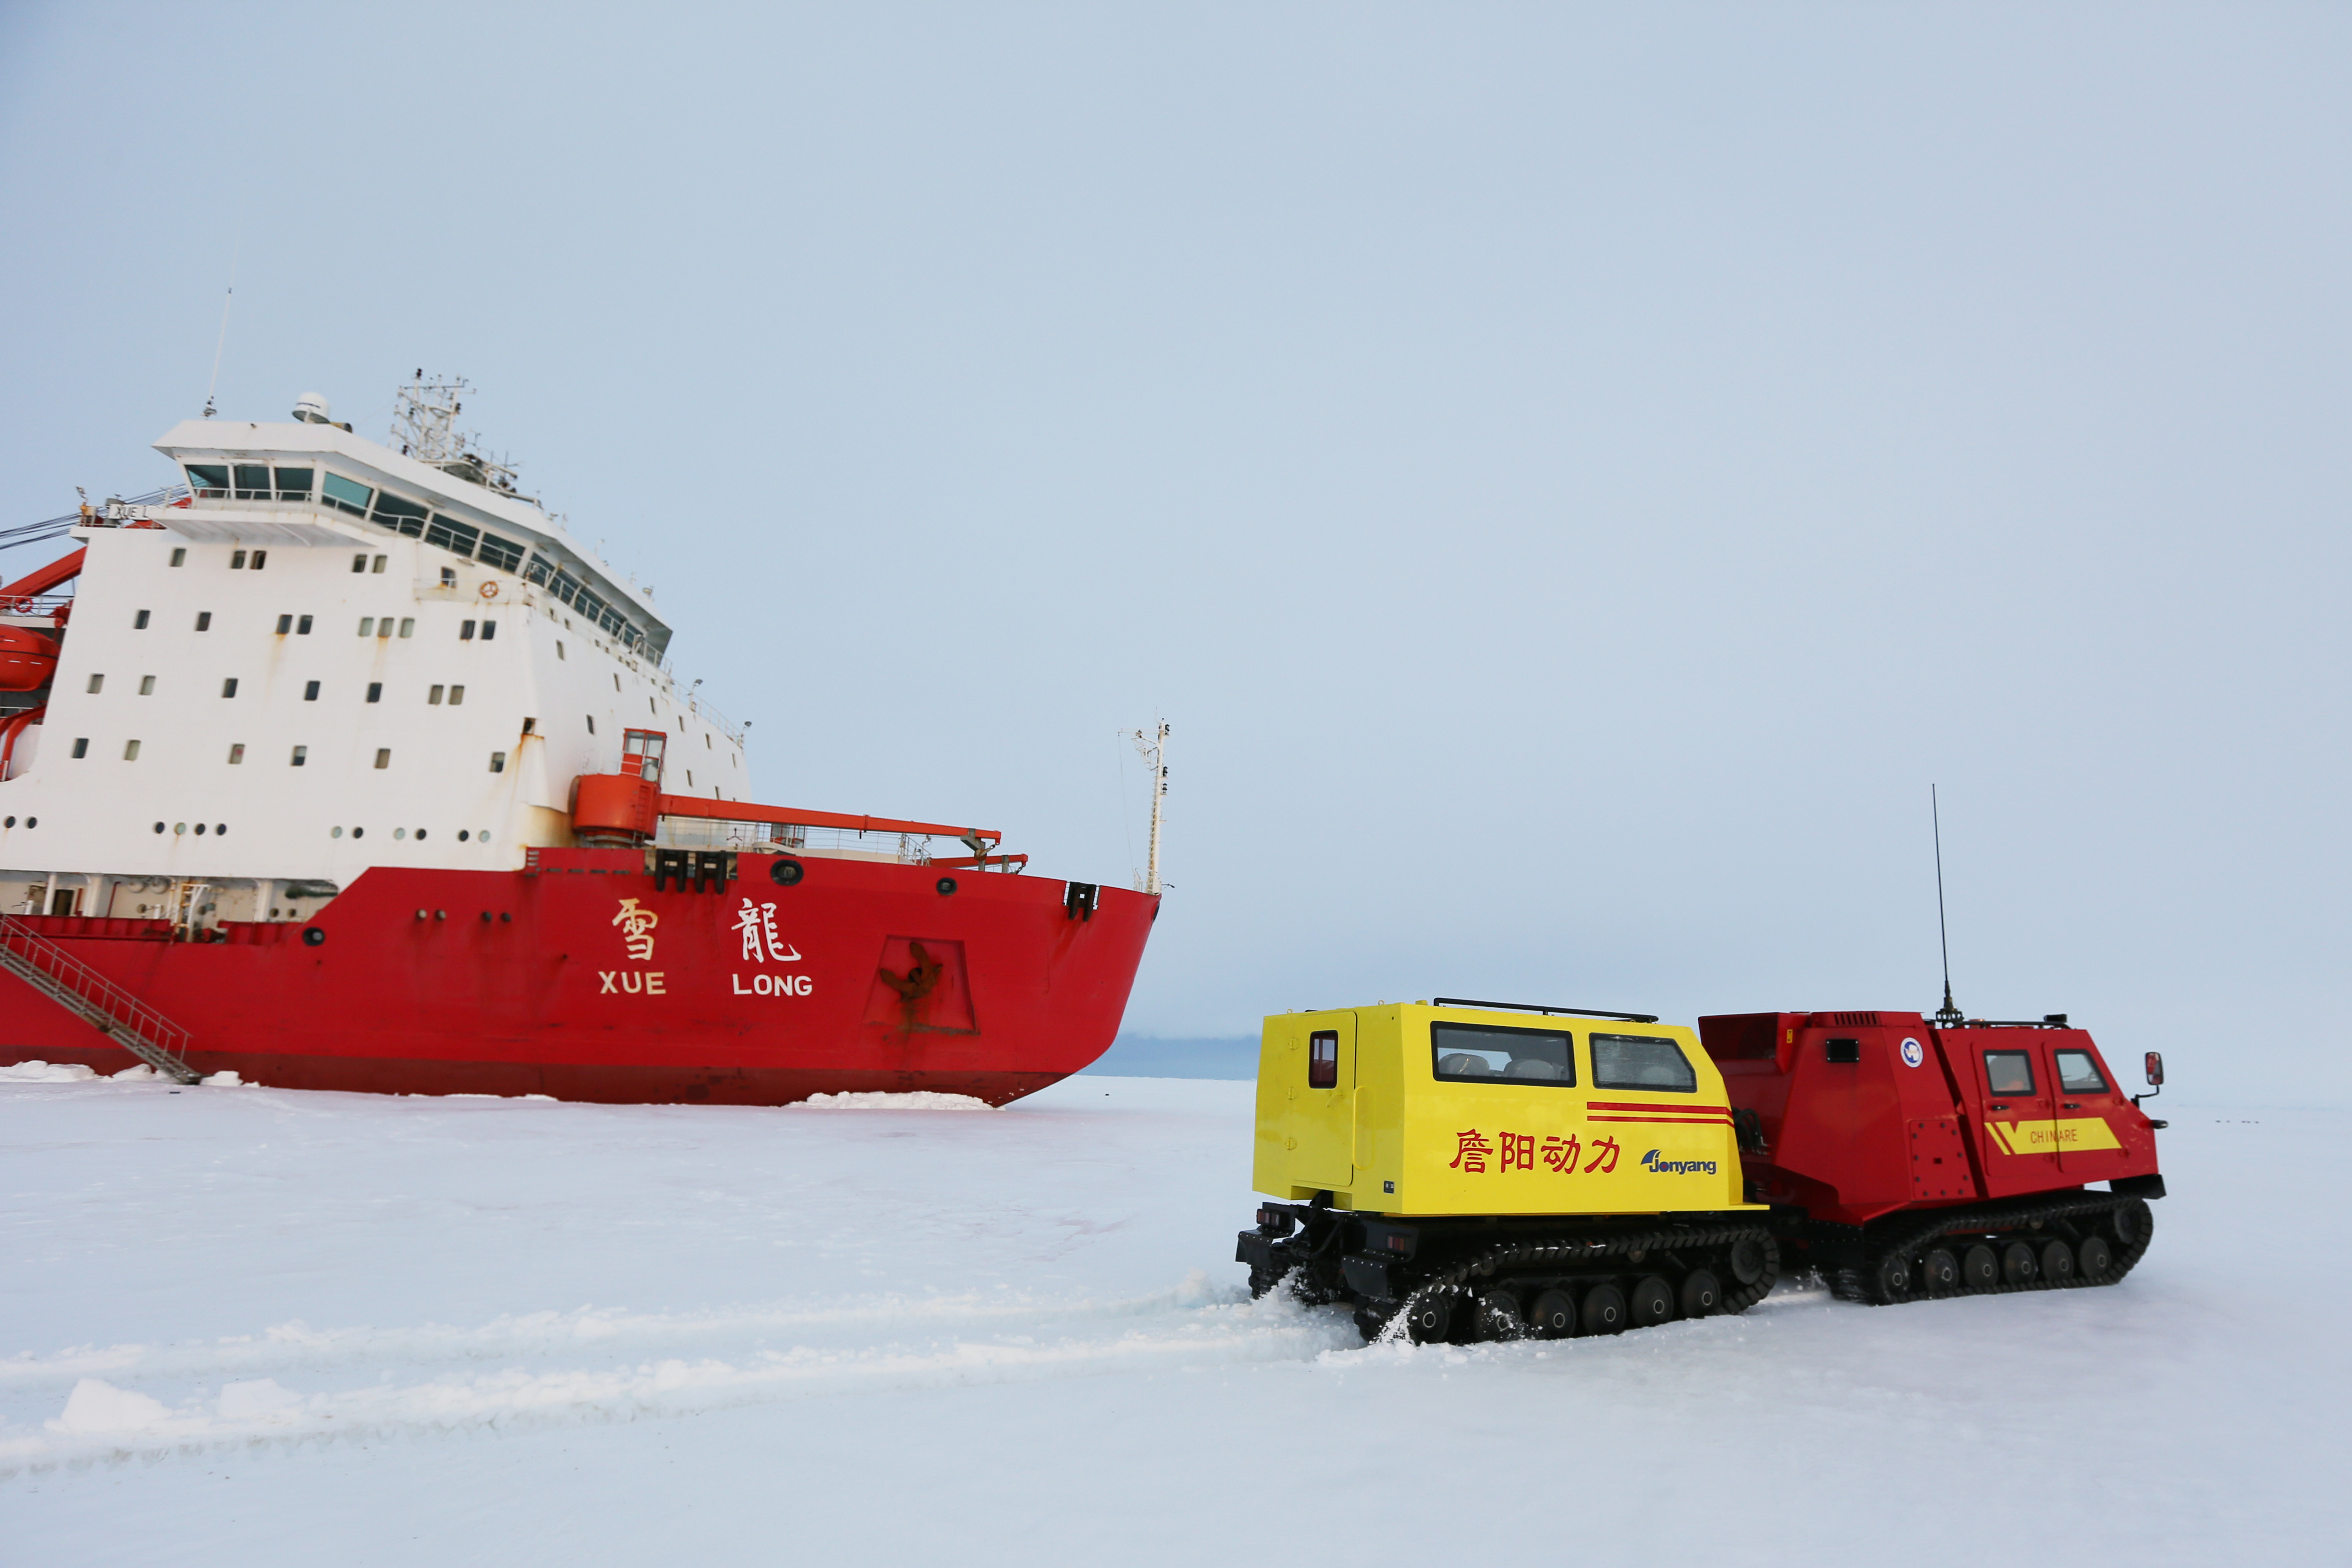 极地科学考察船“雪龙2”号开赴南极